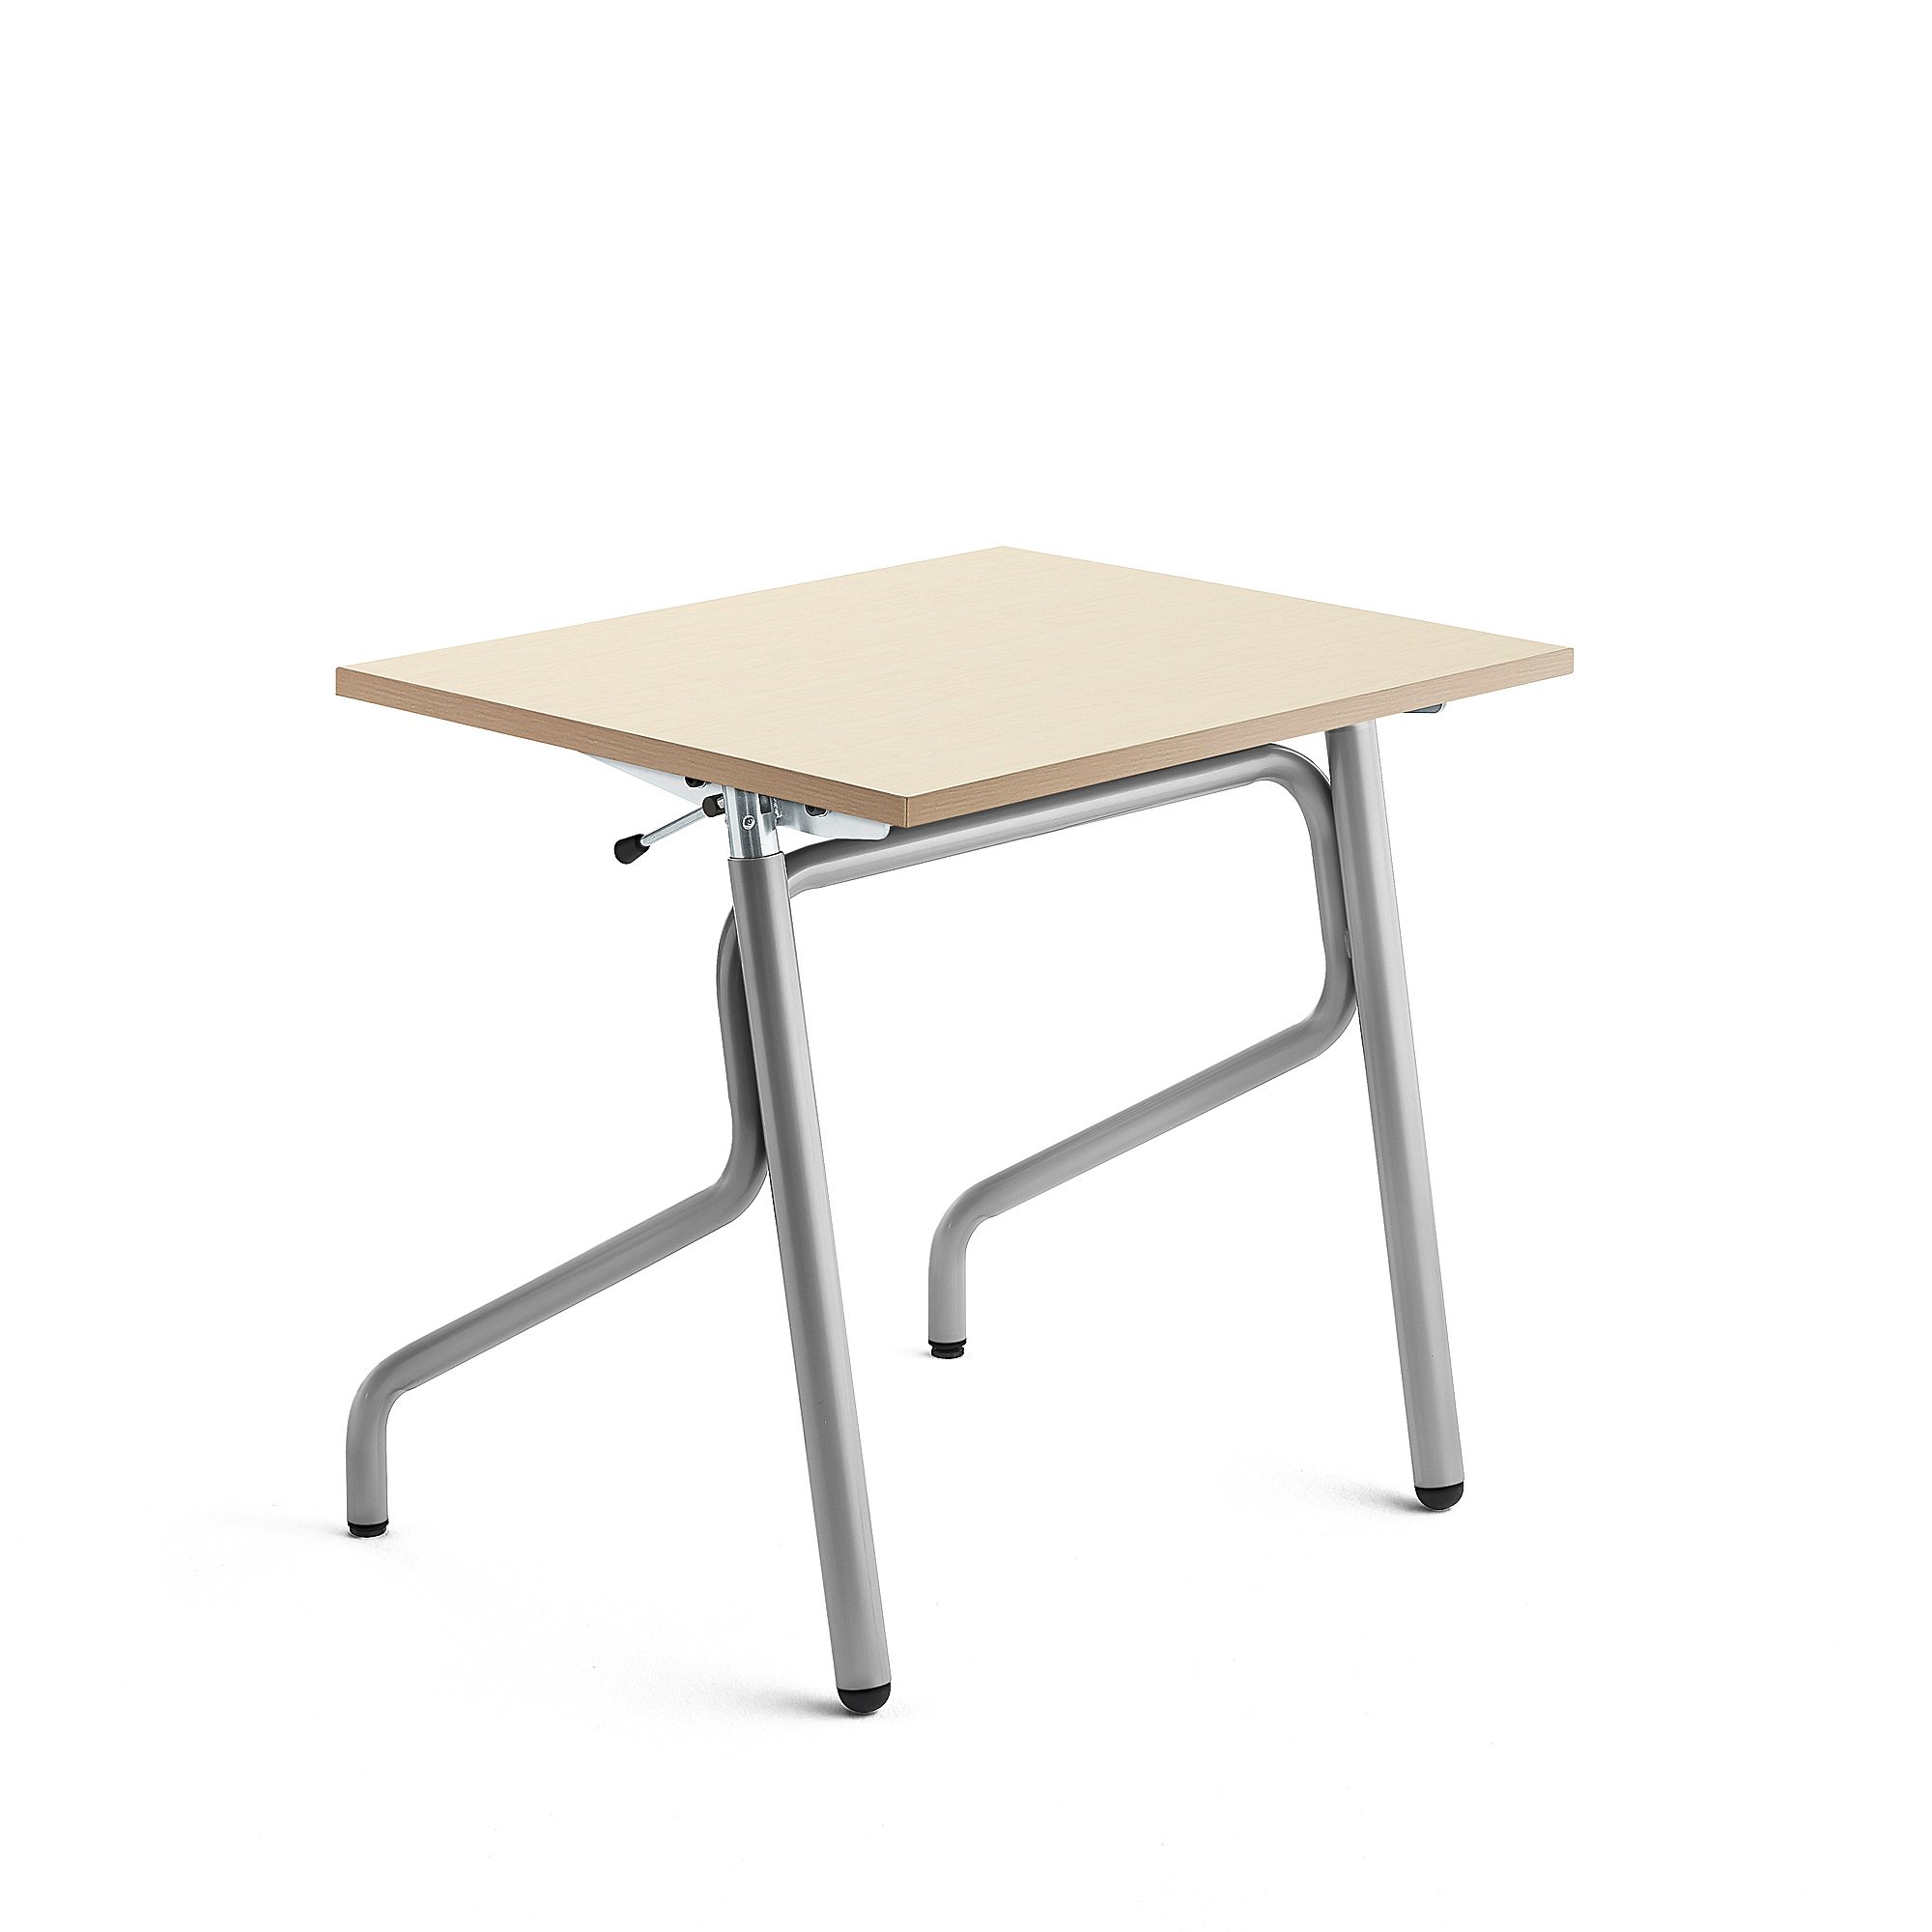 Školní lavice ADJUST, výškově nastavitelná, 700x600 mm, HPL deska, bříza, stříbrná